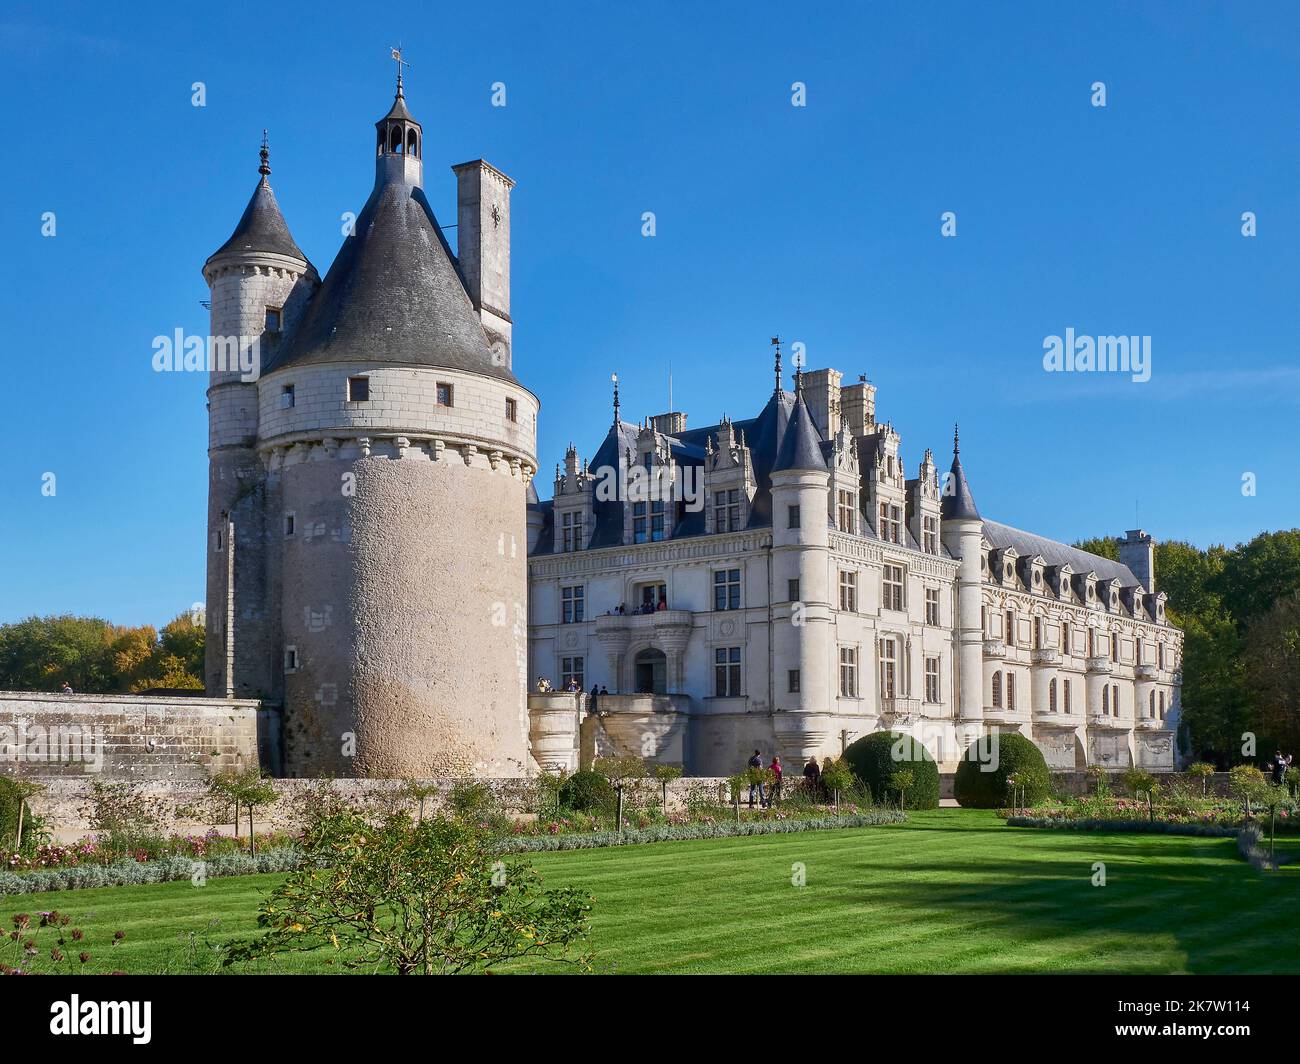 Valle de Cher, Chenonceaux (centro de Francia): El castillo de Chenonceau, famoso castillo del valle del Loira, en el departamento de Touraine Foto de stock